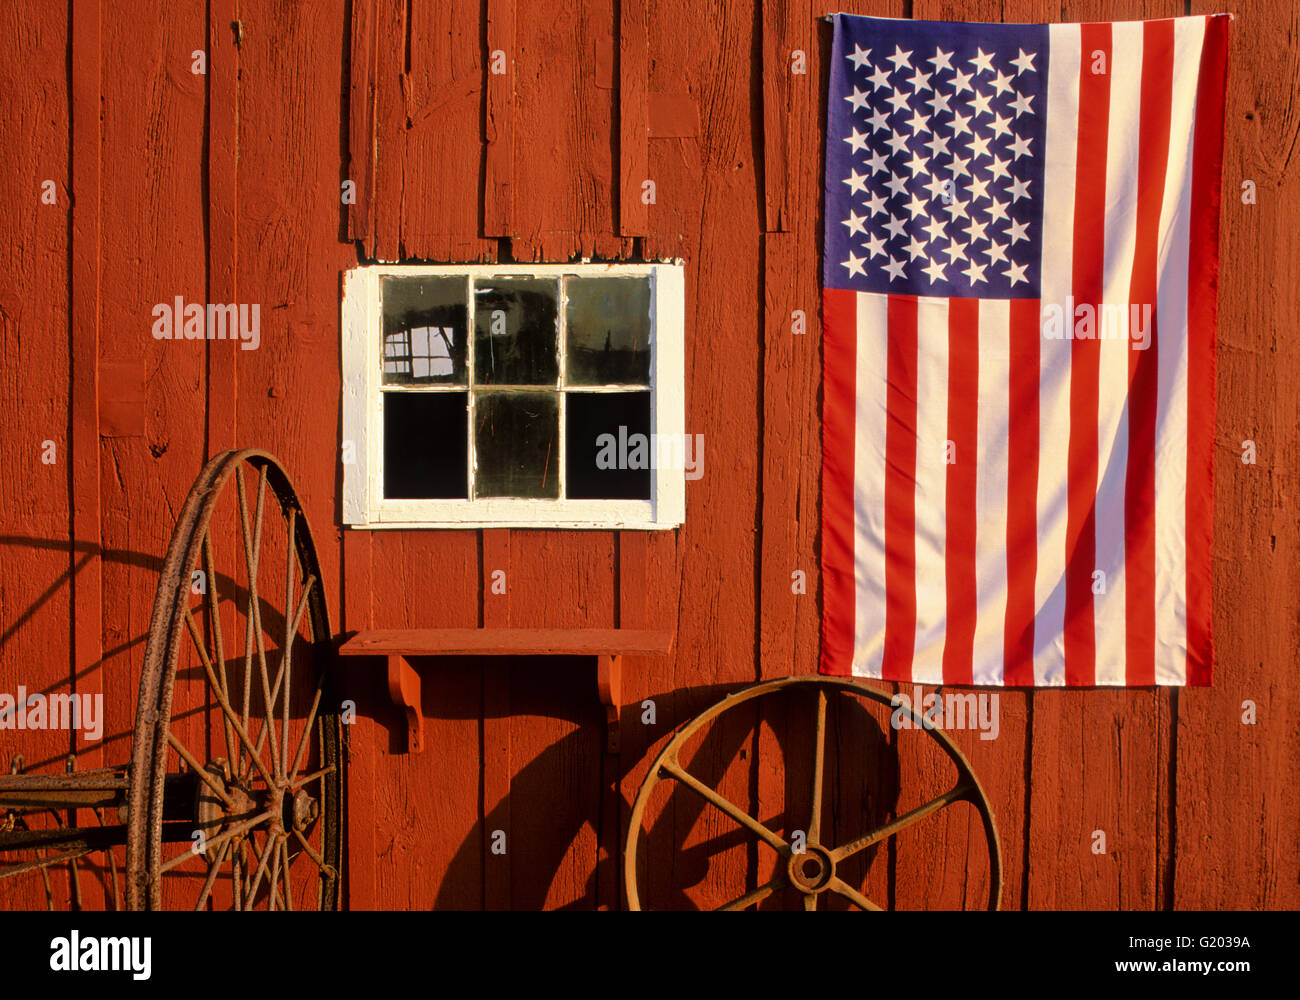 Nahaufnahme der US-Flagge auf einer roten Scheune und rostigen Rädern, New Jersey Farm, USA, US-Flagge ländliche Amerika historische Bilder koloniale US-Flagge Nahaufnahme des Frühlings Stockfoto